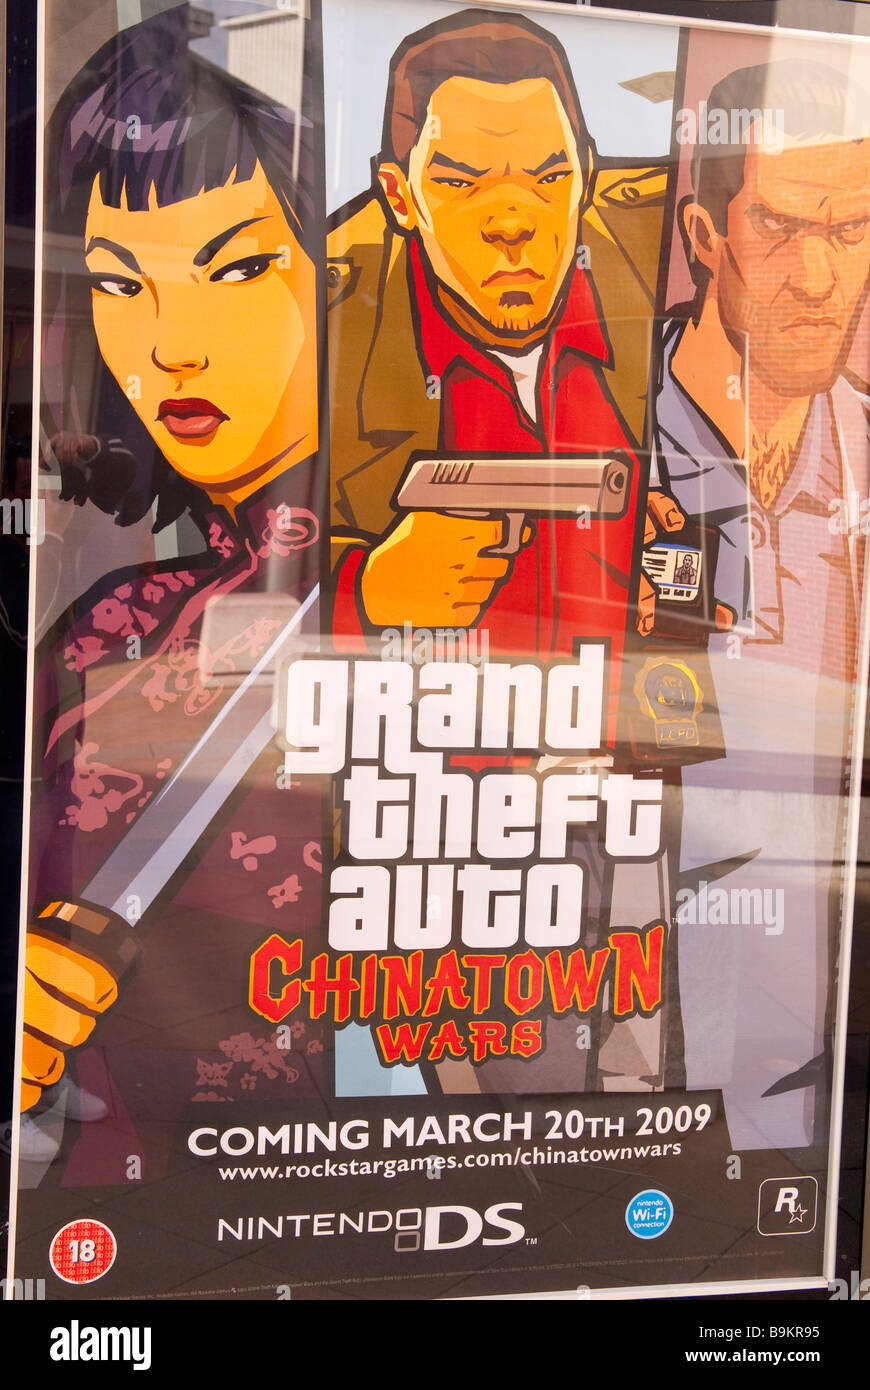 Una pubblicità tramite Affissioni grand theft auto Chinatown Wars computer  game su nintendo ds console portatile Foto stock - Alamy